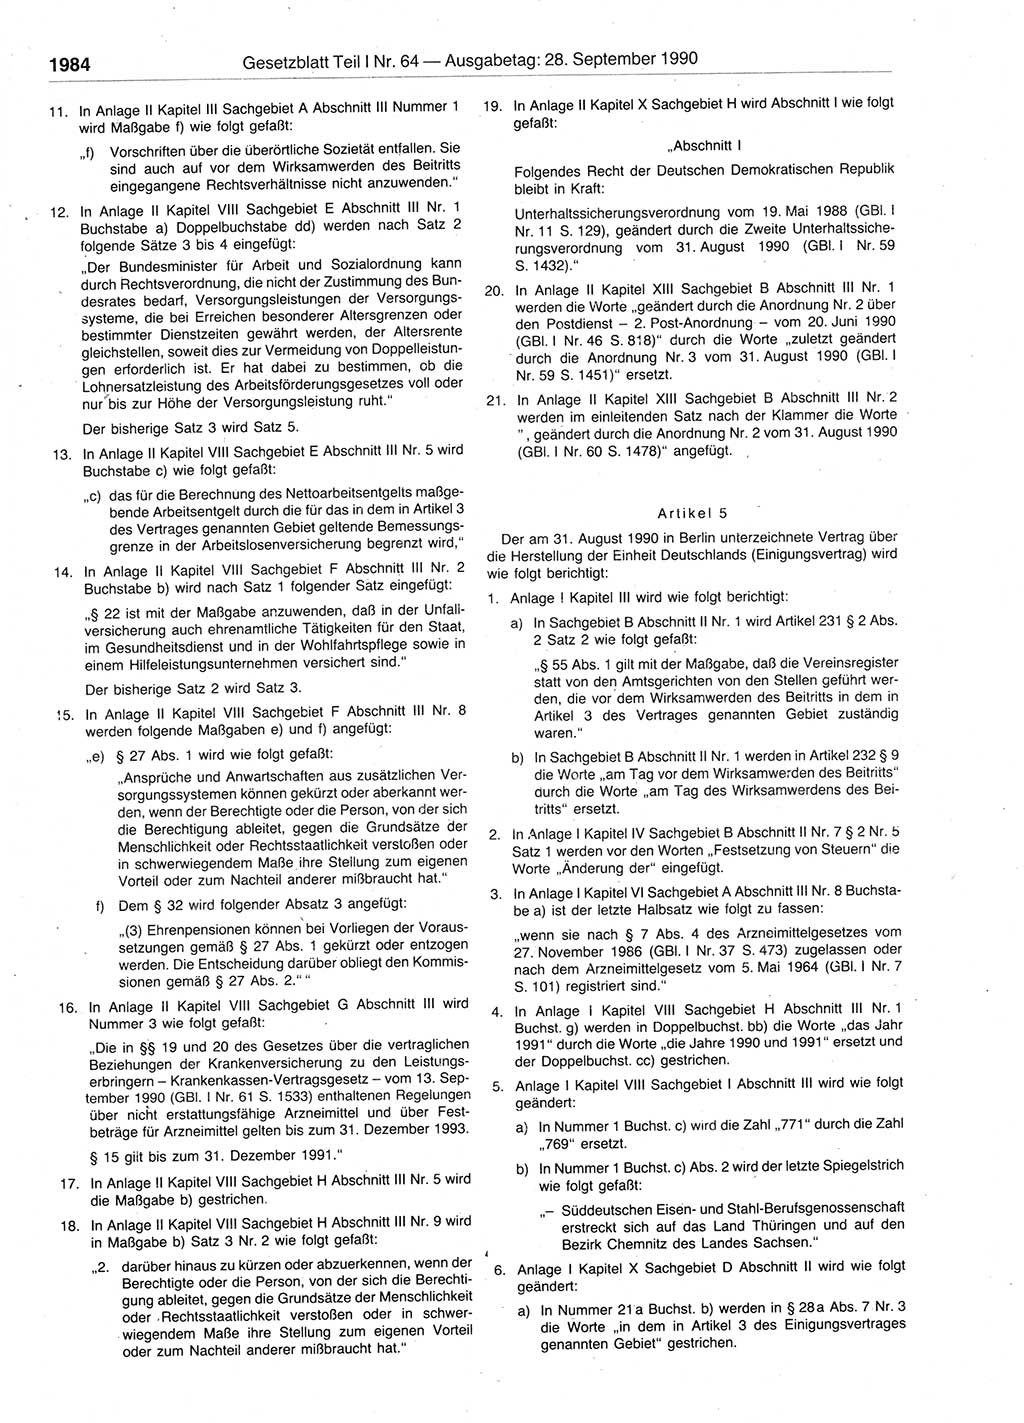 Gesetzblatt (GBl.) der Deutschen Demokratischen Republik (DDR) Teil Ⅰ 1990, Seite 1984 (GBl. DDR Ⅰ 1990, S. 1984)